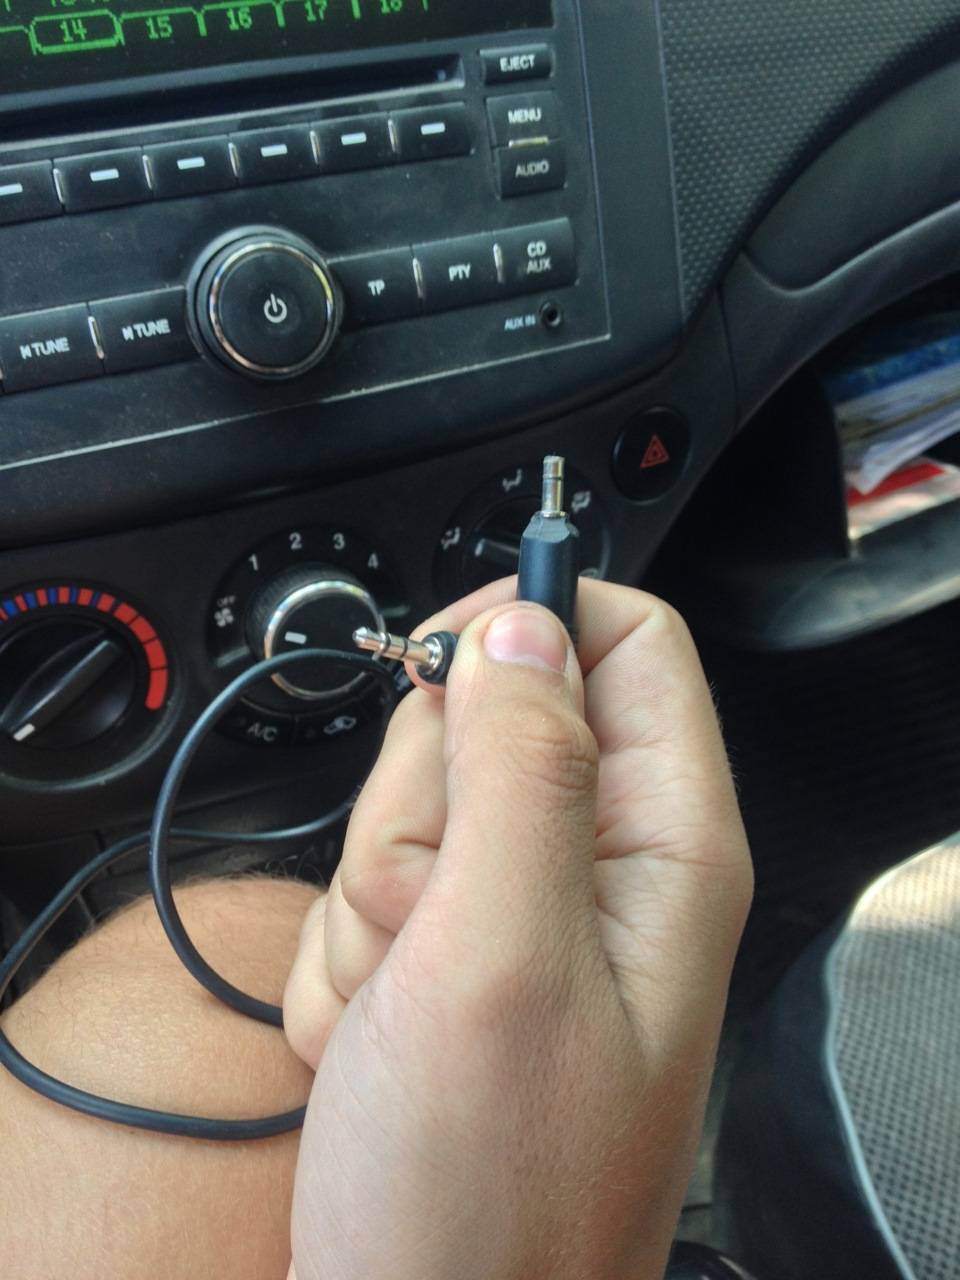 Как подключить телефон к магнитоле в машине: через блютуз, aux, usb